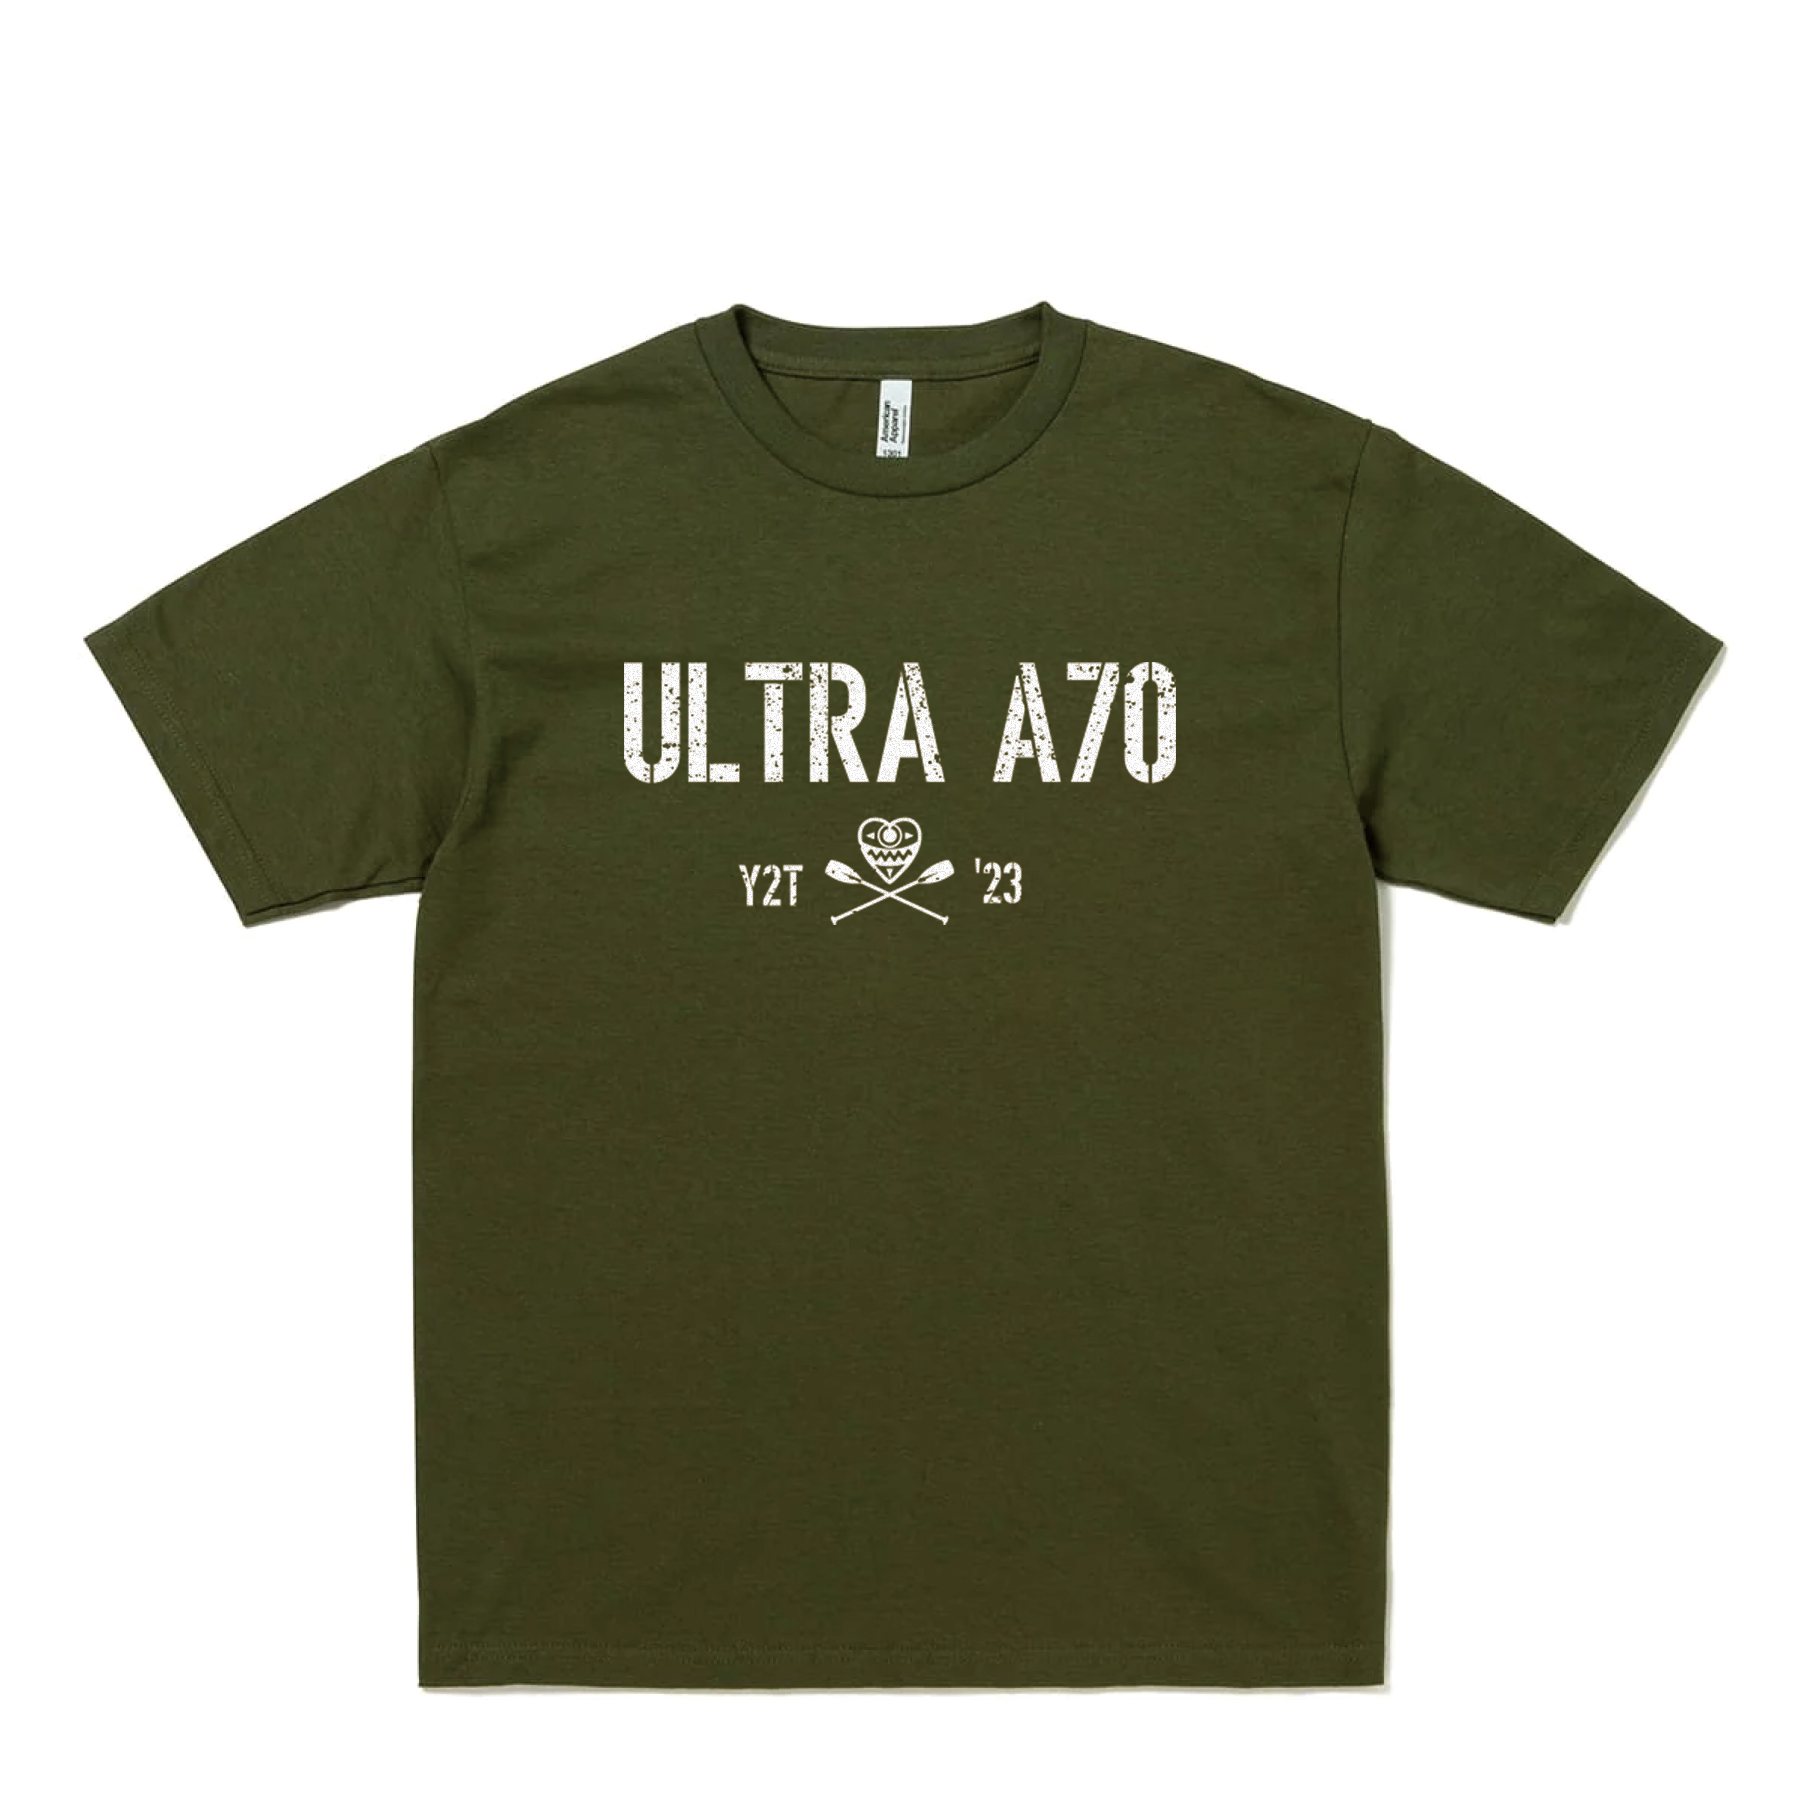 UltraA70_armyT